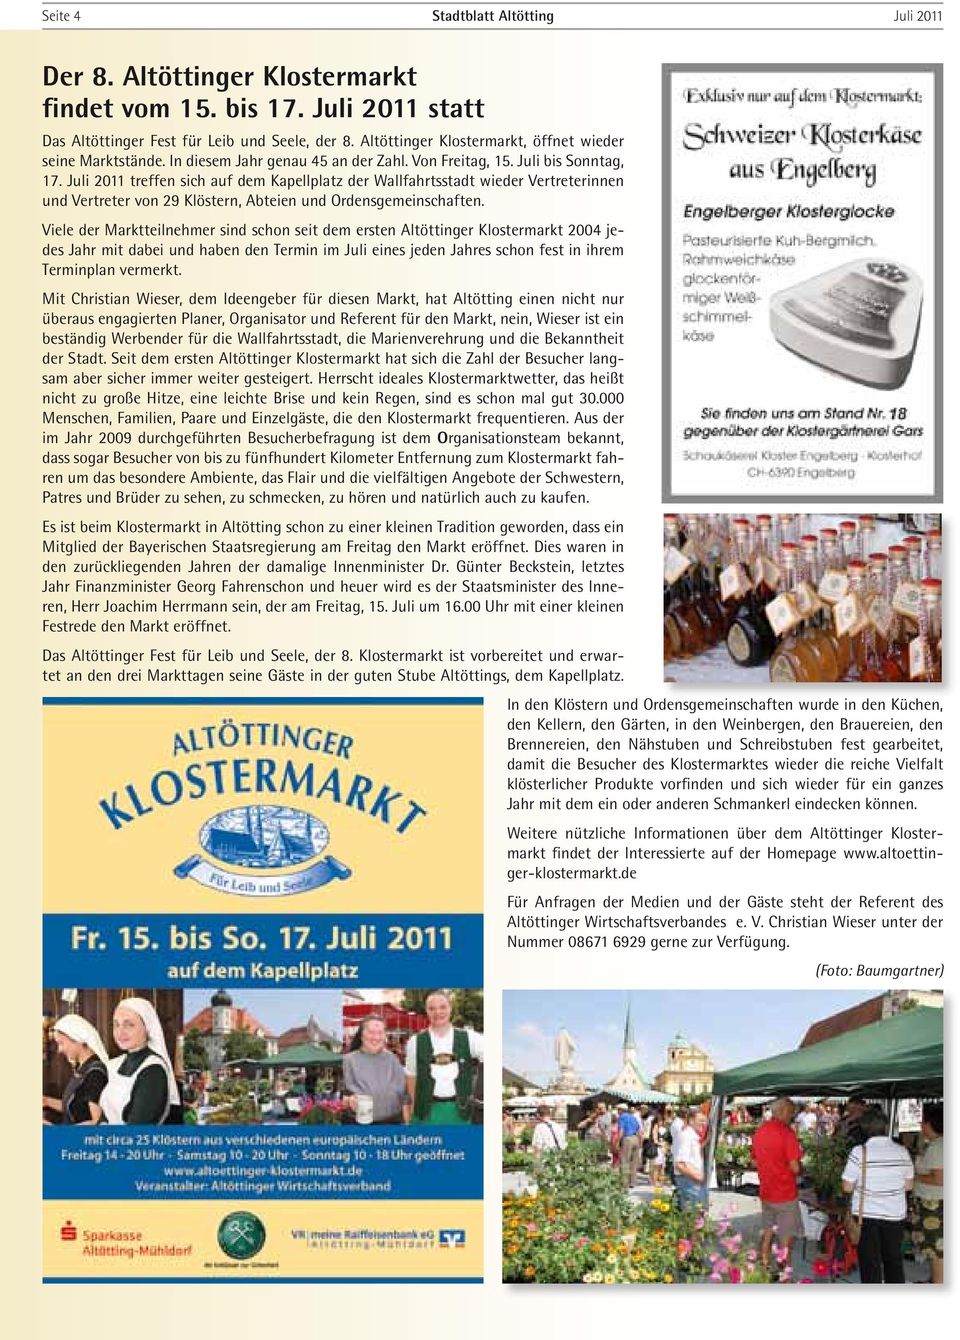 Juli 2011 treffen sich auf dem Kapellplatz der Wallfahrtsstadt wieder Vertreterinnen und Vertreter von 29 Klöstern, Abteien und Ordensgemeinschaften.